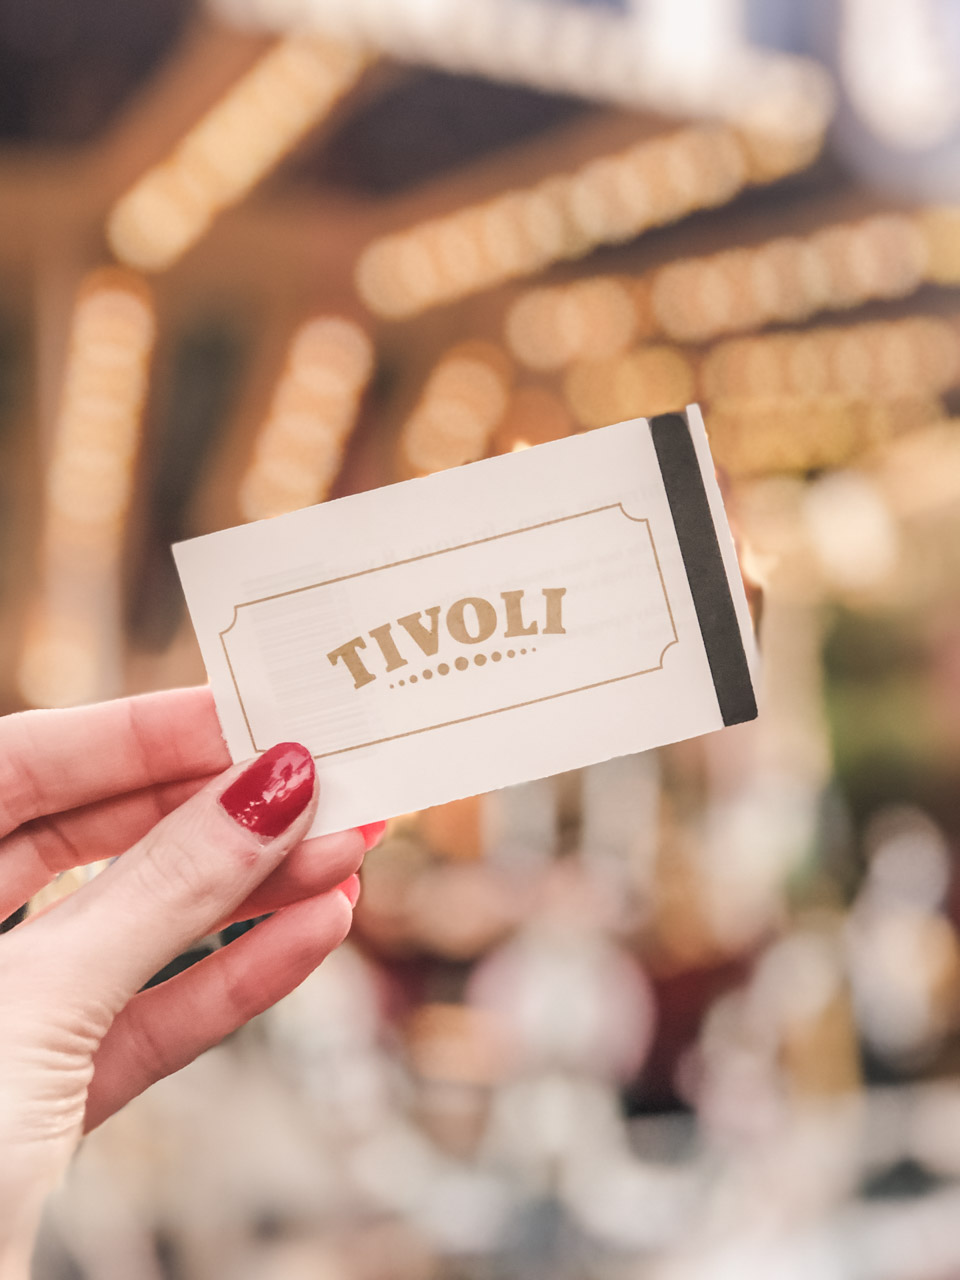 A girl holding an entrance ticket to Tivoli Gardens in Copenhagen, Denmark